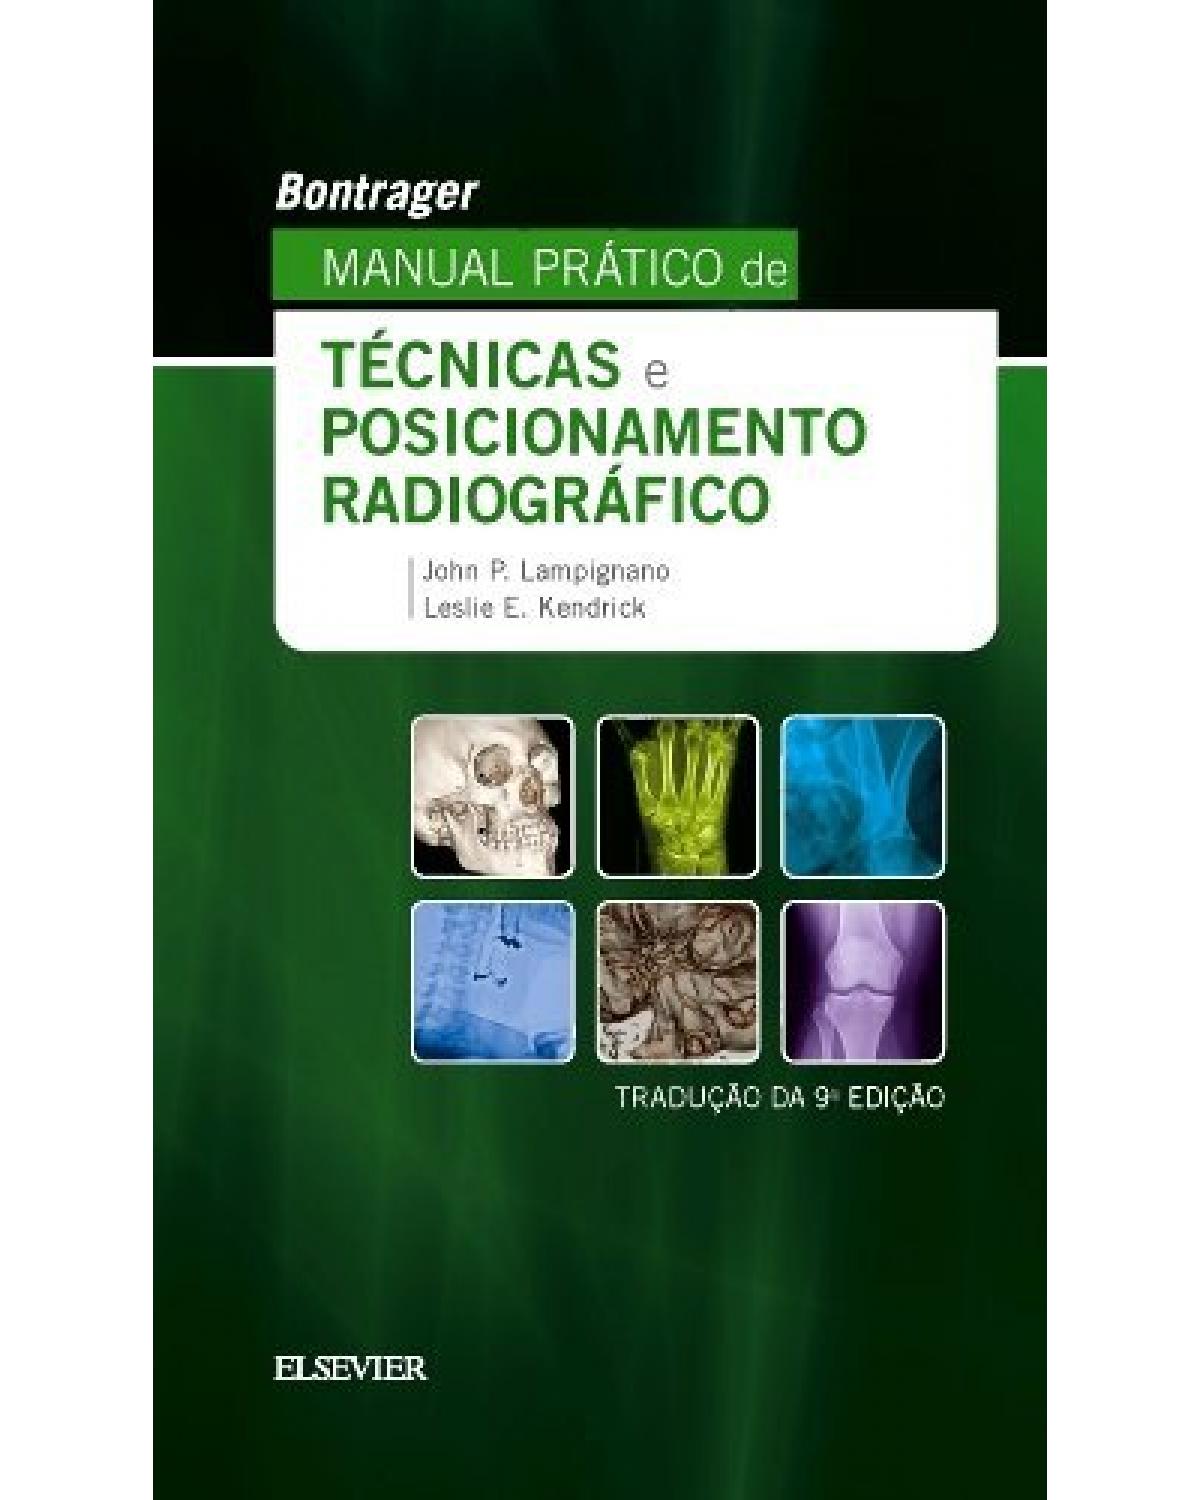 Bontrager - Manual prático de técnicas e posicionamento radiográfico - 9ª Edição | 2018